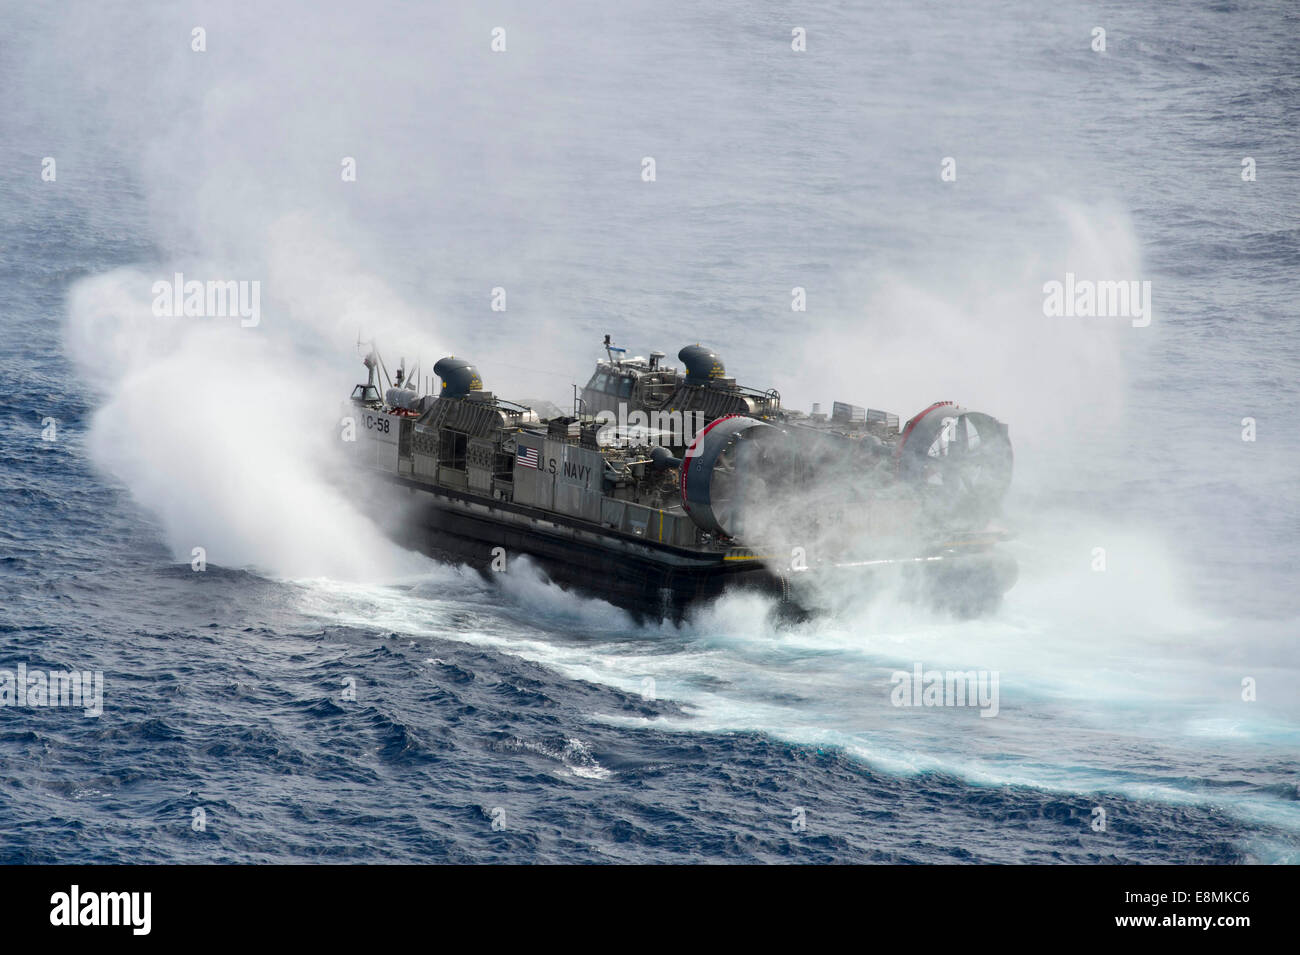 Océano Pacífico, 26 de junio de 2014 - un desembarco de cojín de aire (LCAC) sale el buque de asalto anfibio USS Peleliu (LHA 5). Foto de stock